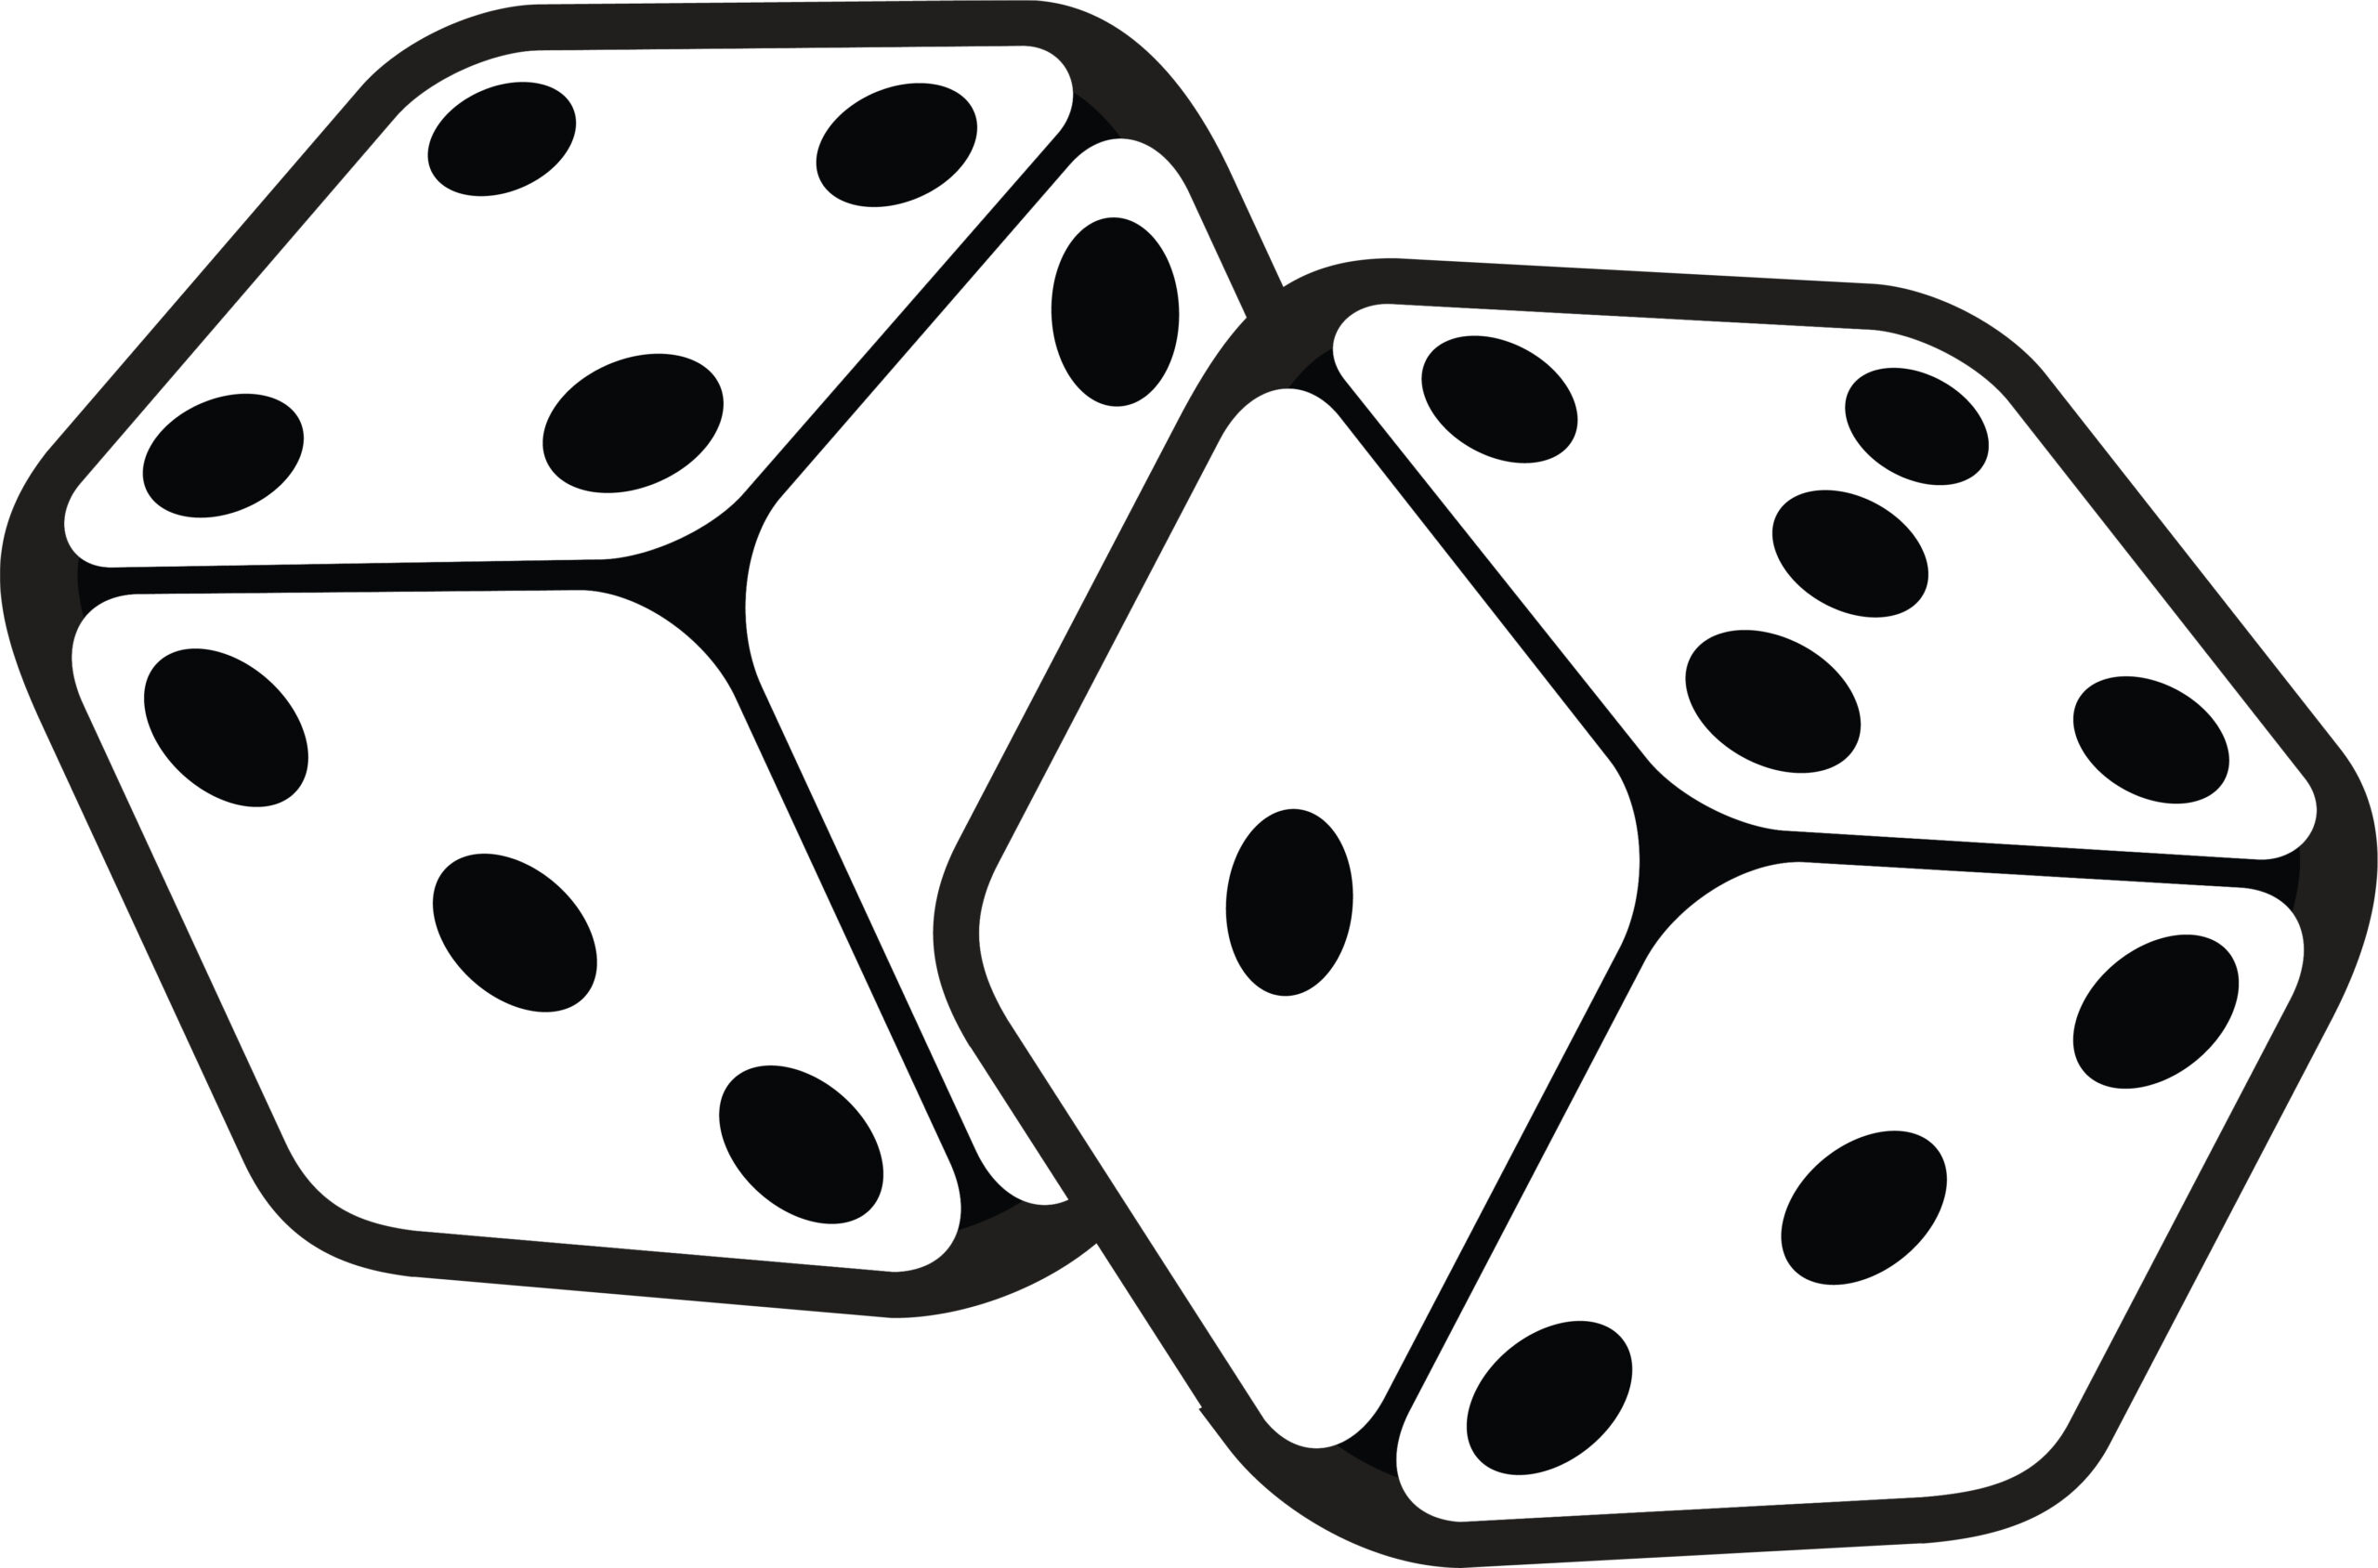 Illustration of dice